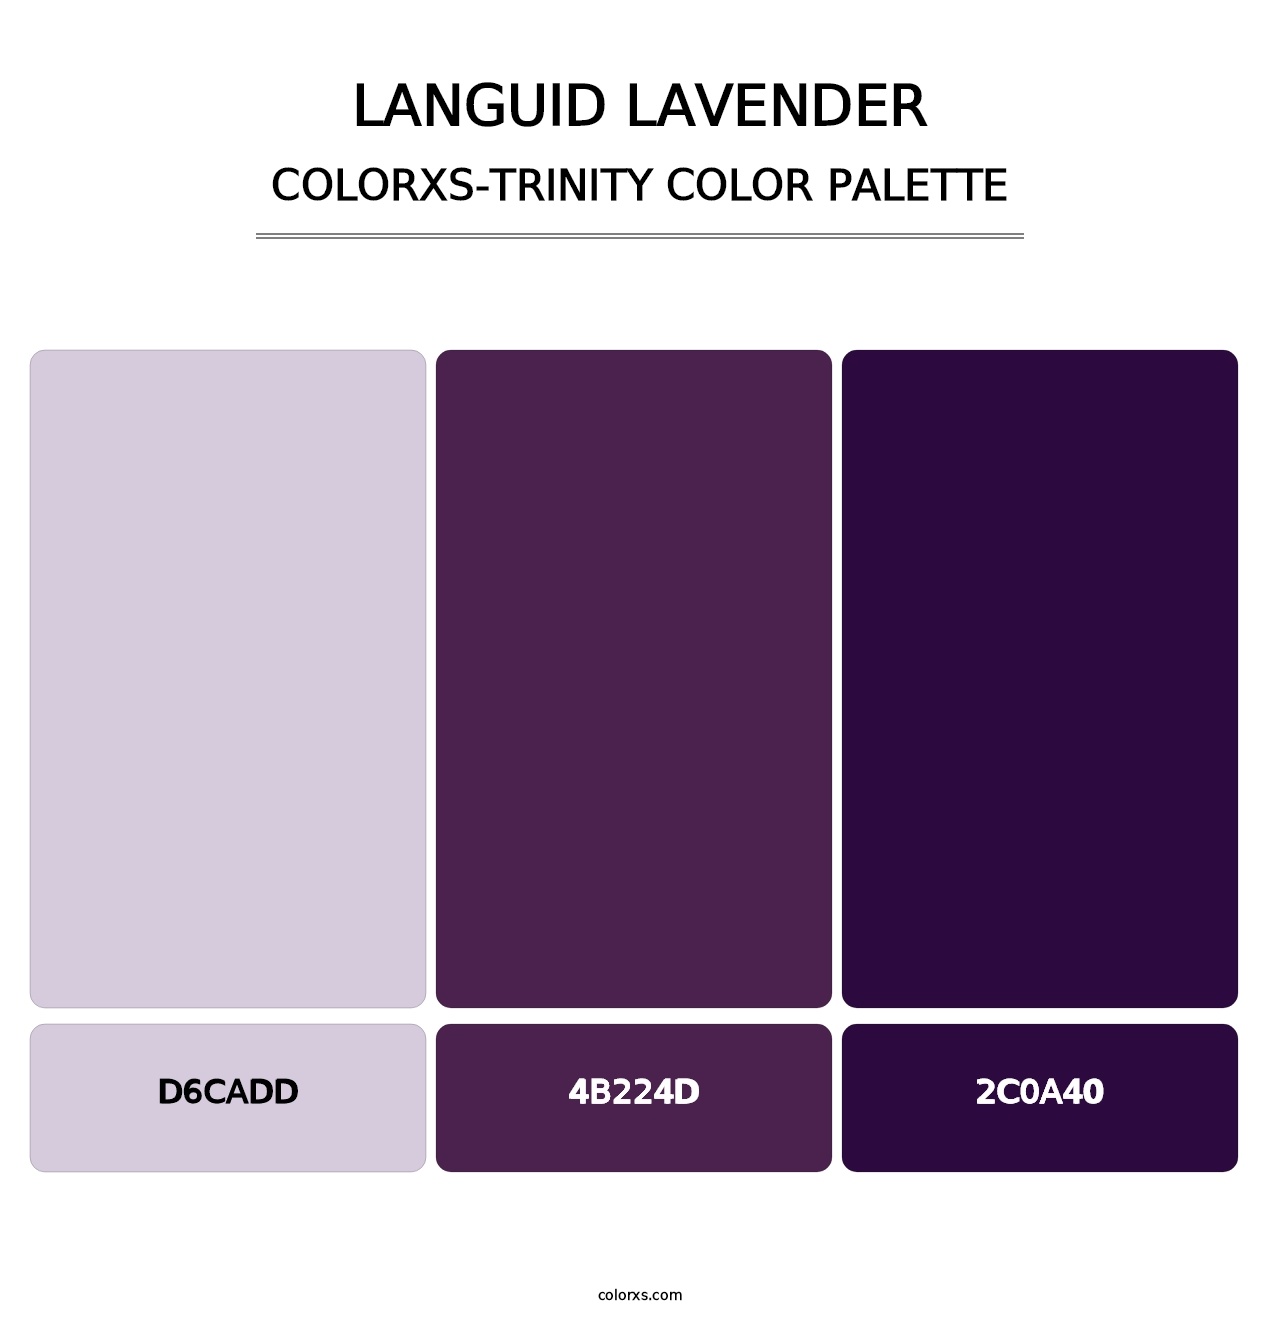 Languid Lavender - Colorxs Trinity Palette